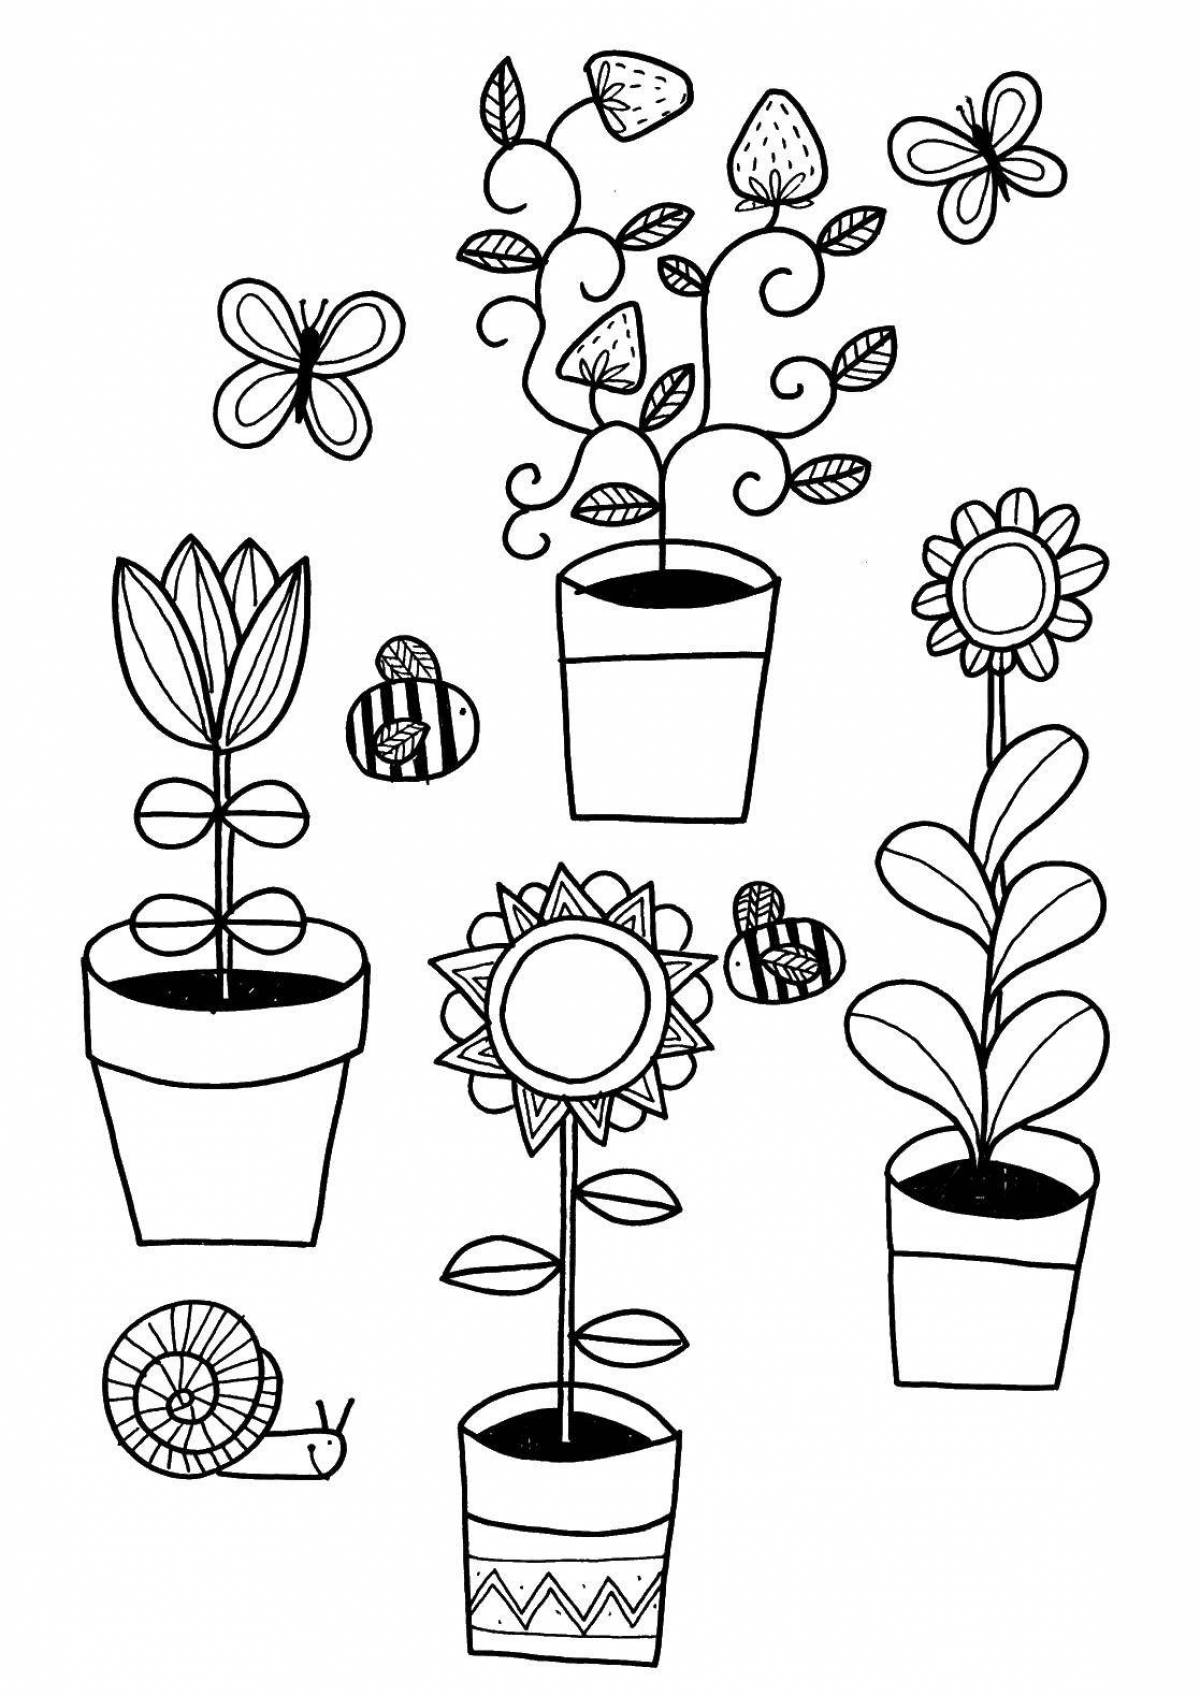 Plants in pots